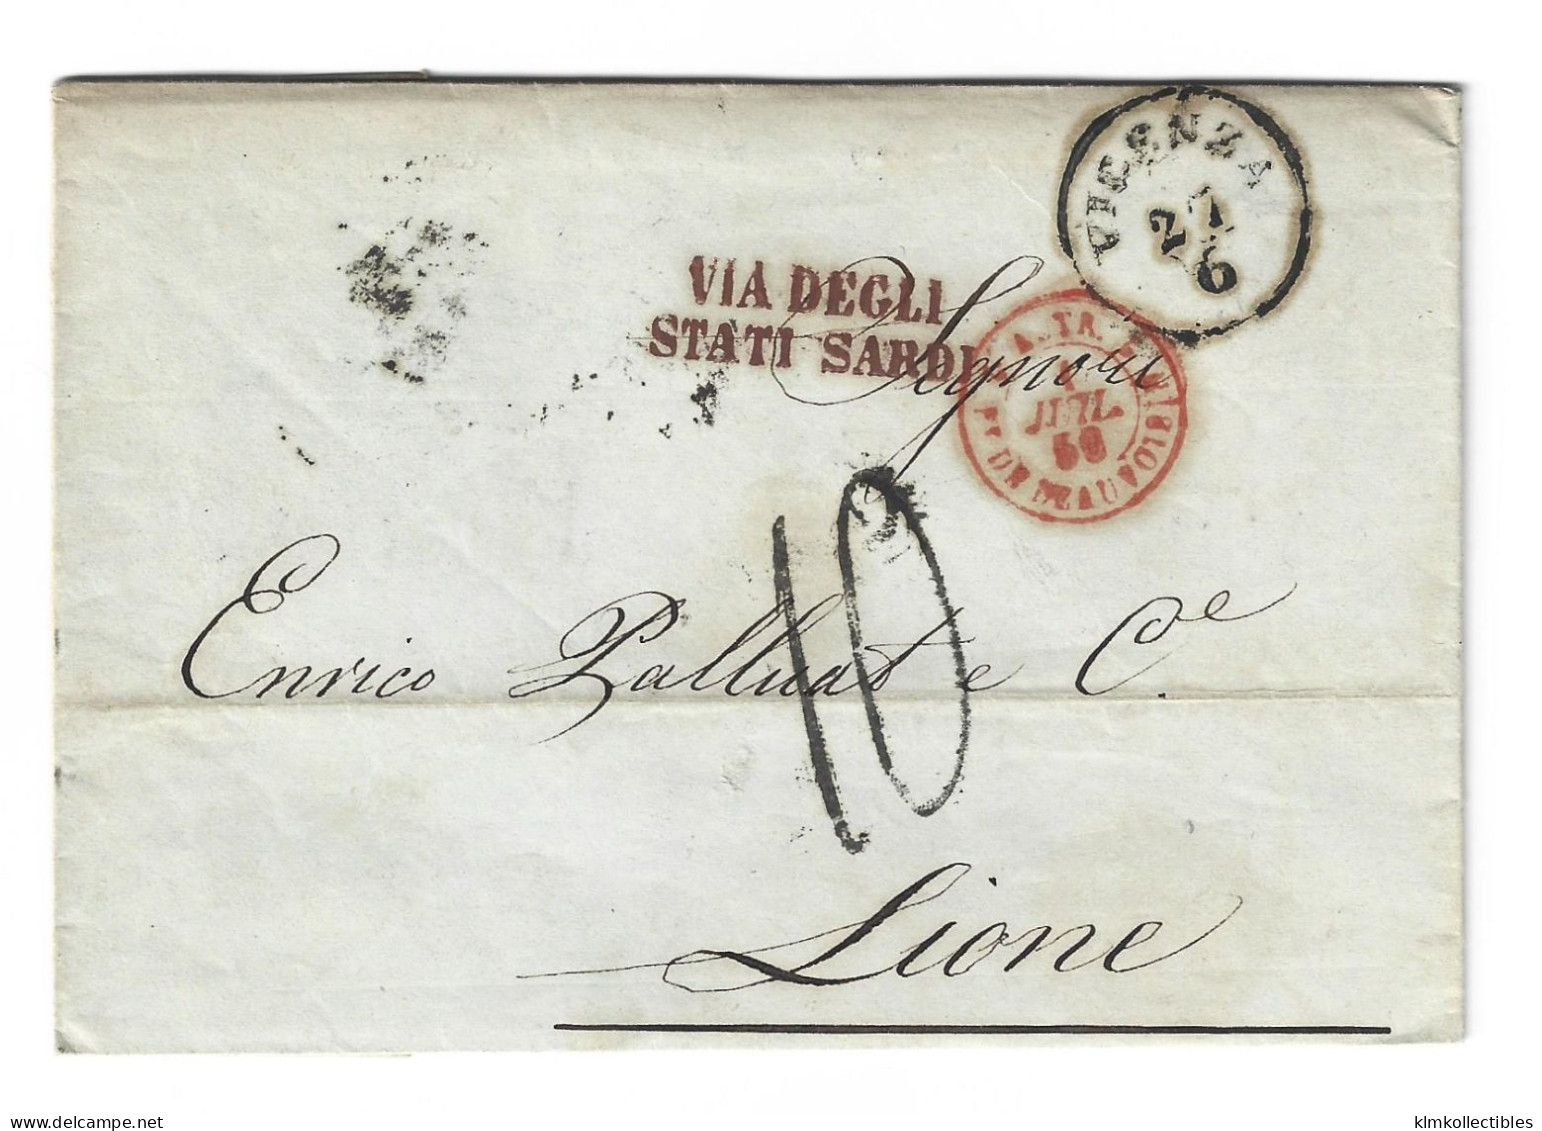 ITALY ITALIA - 1856 PIROSCAFI STAMPLESS LETTER TO FRANCE - VICENZA TO LYON - VIA DEGLI STATI SARDI CACHET - Non Classés